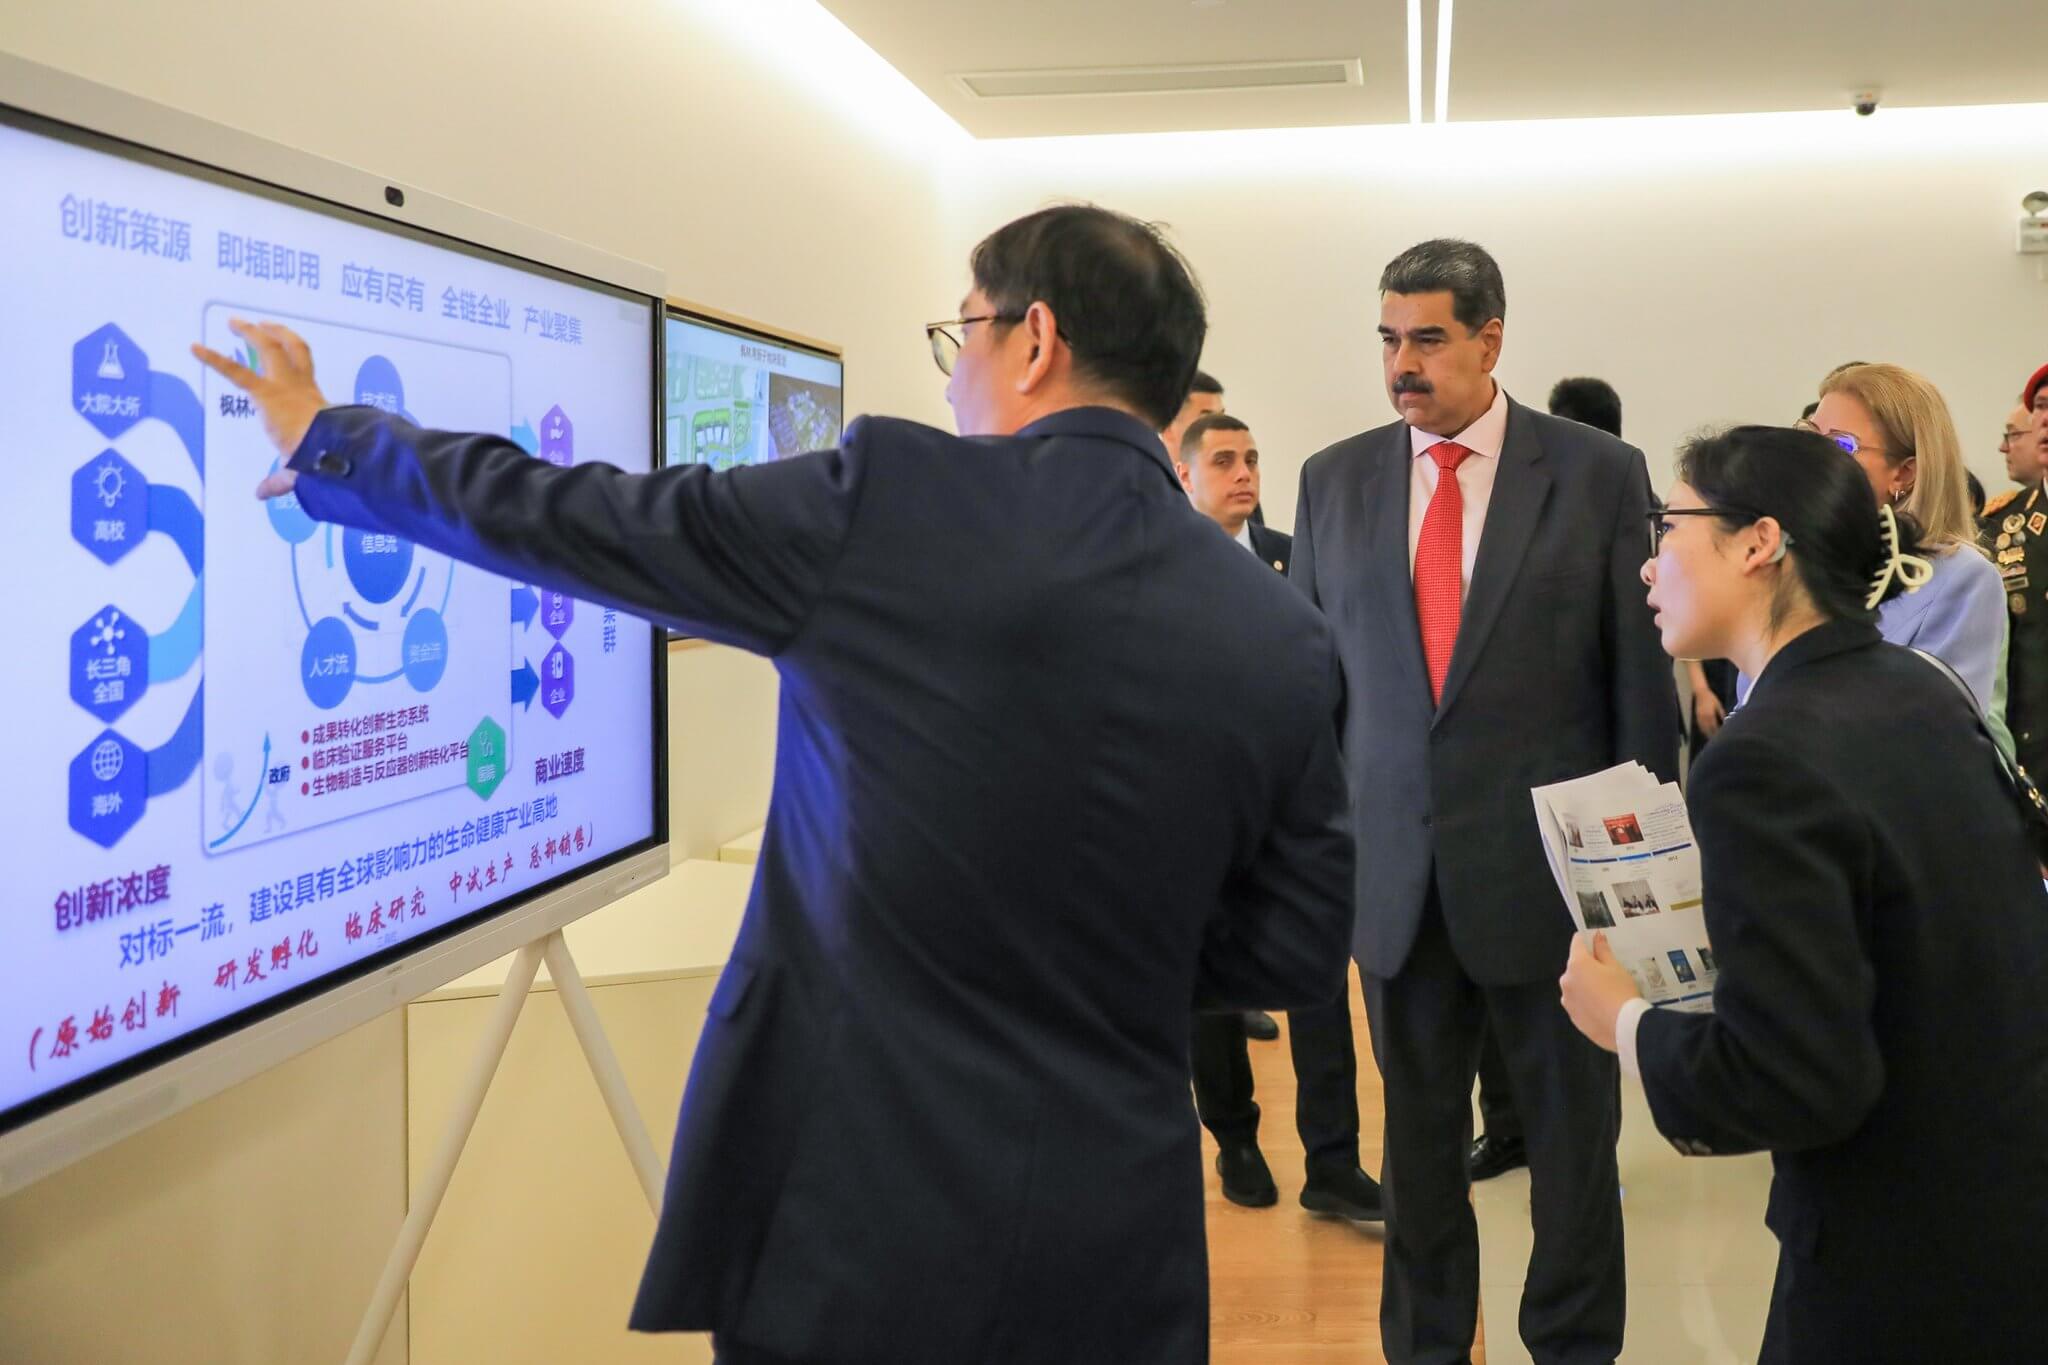 Alianza científica y tecnológica entre Venezuela y China avanza hacia el Desarrollo Sostenible